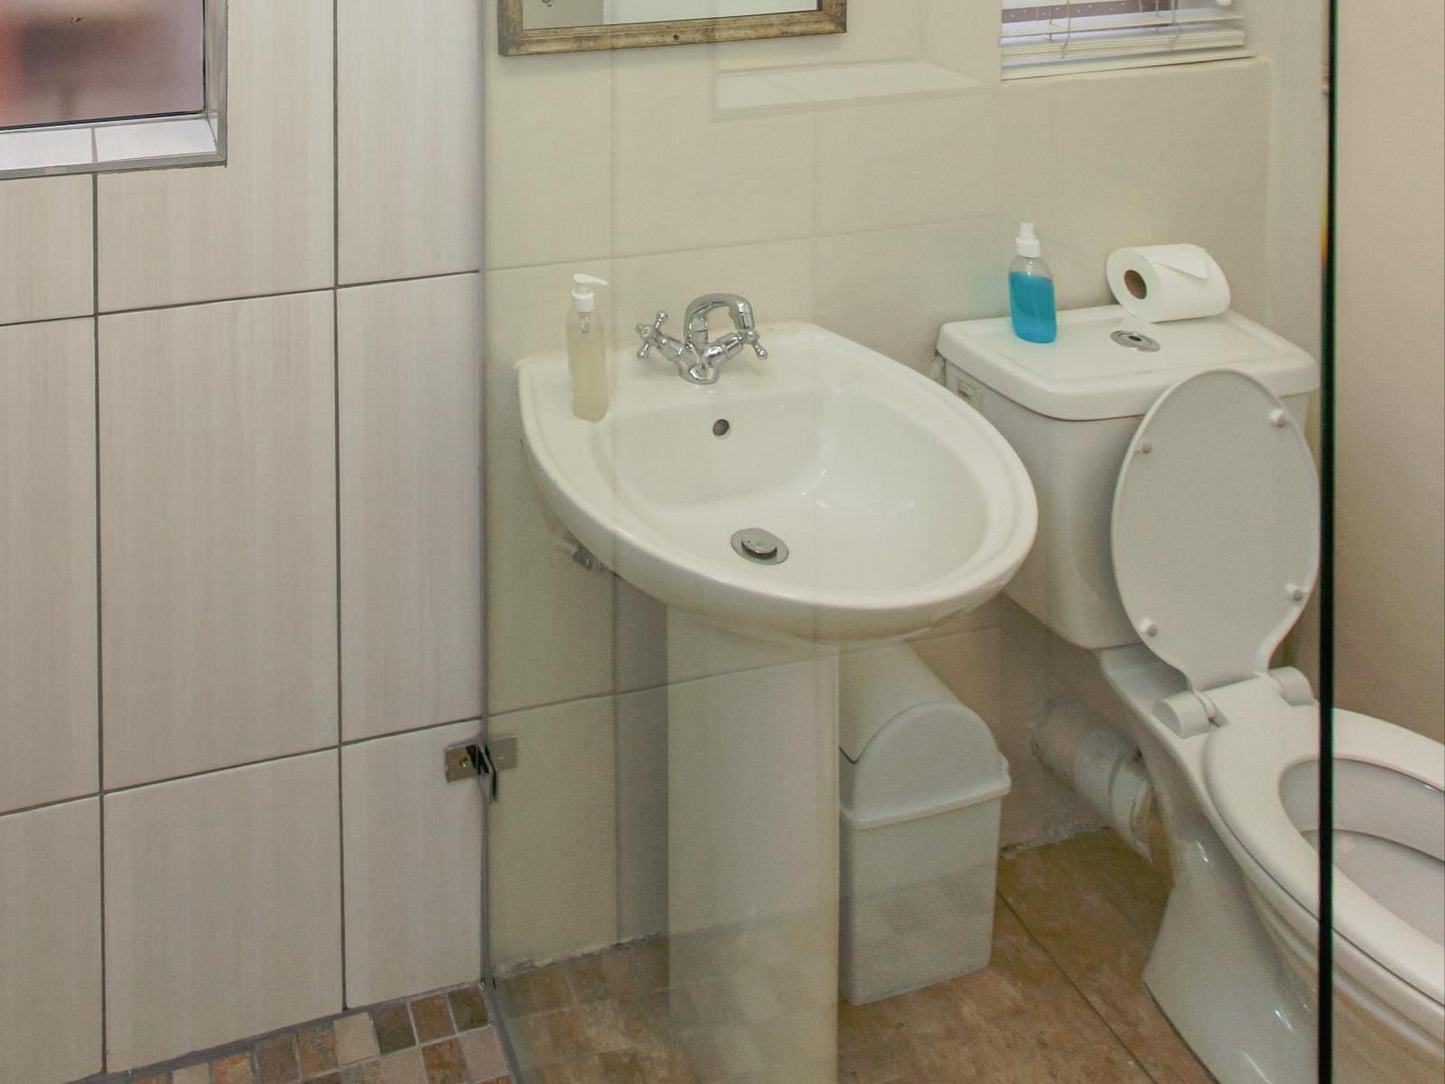 Kleinplaas Oudtshoorn Western Cape South Africa Unsaturated, Bathroom